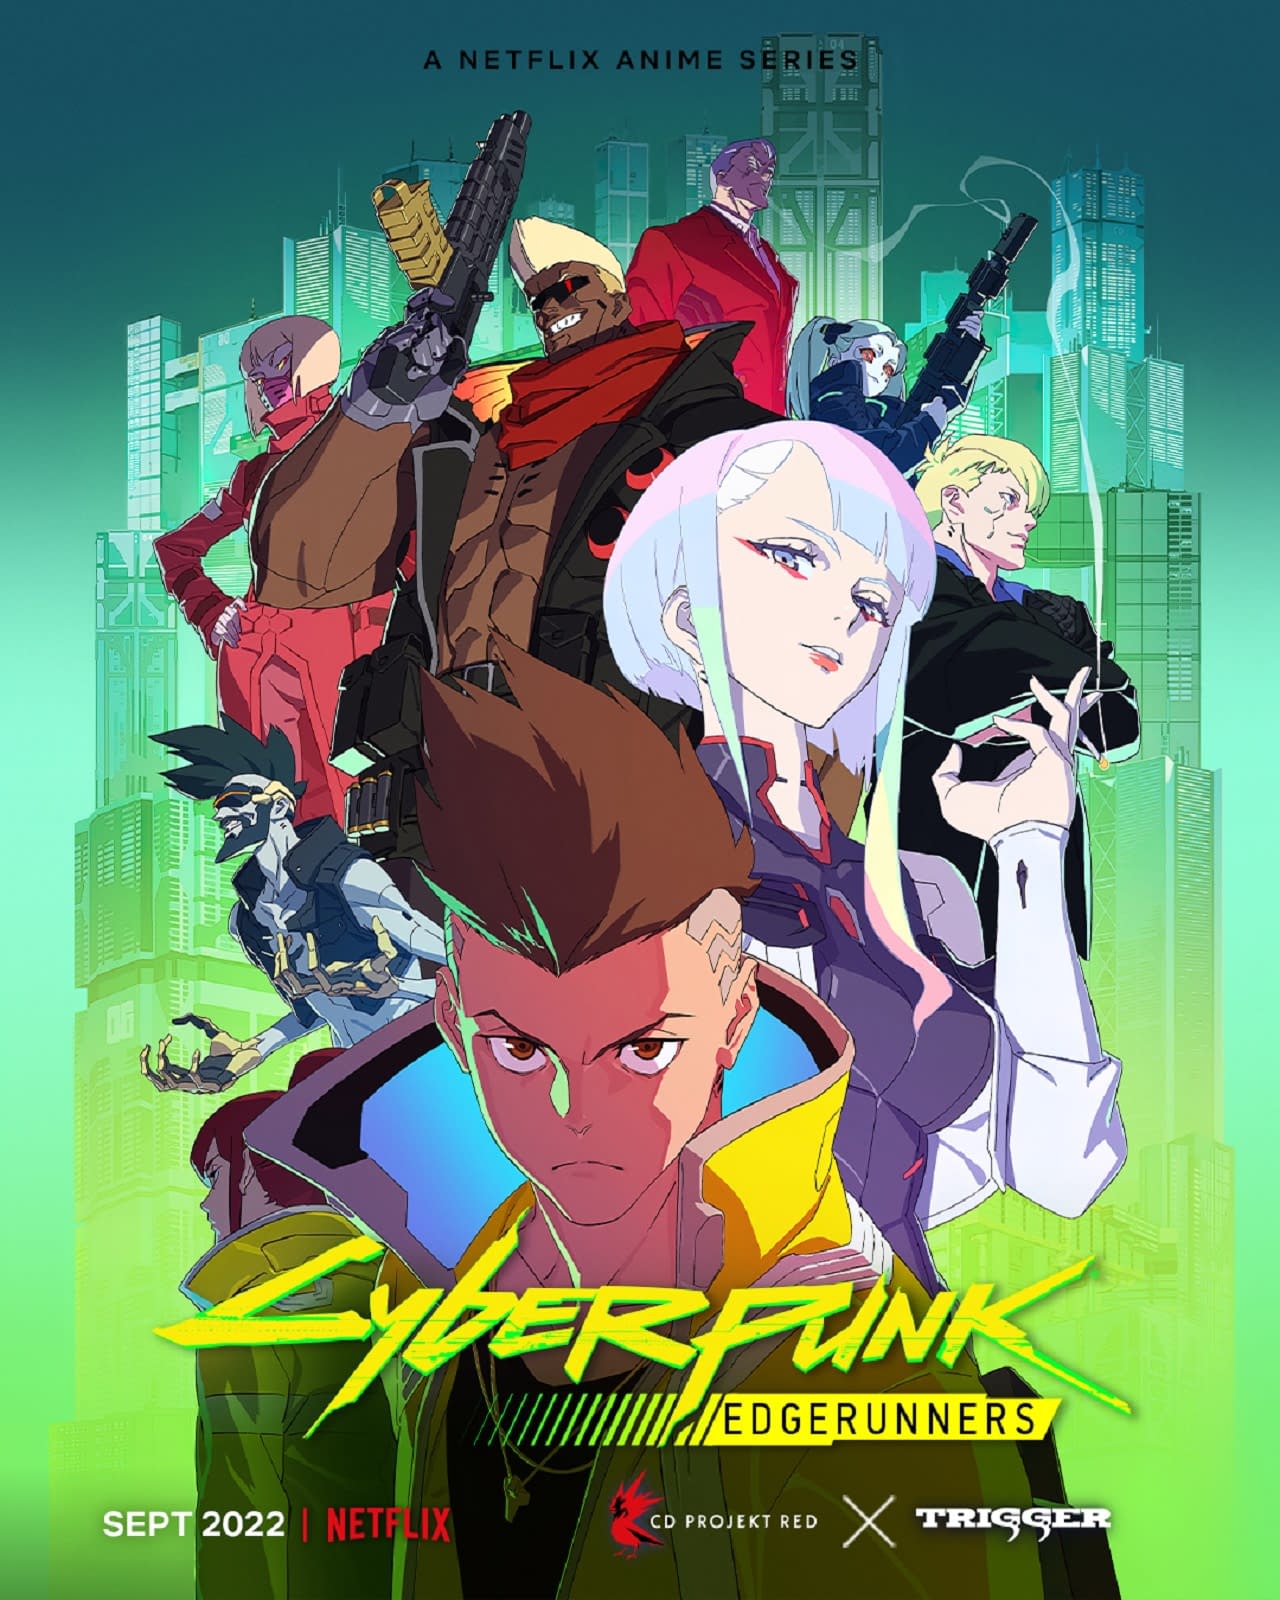 Cyberpunk Edgerunners Netflix, Studio Trigger Release Anime Trailer